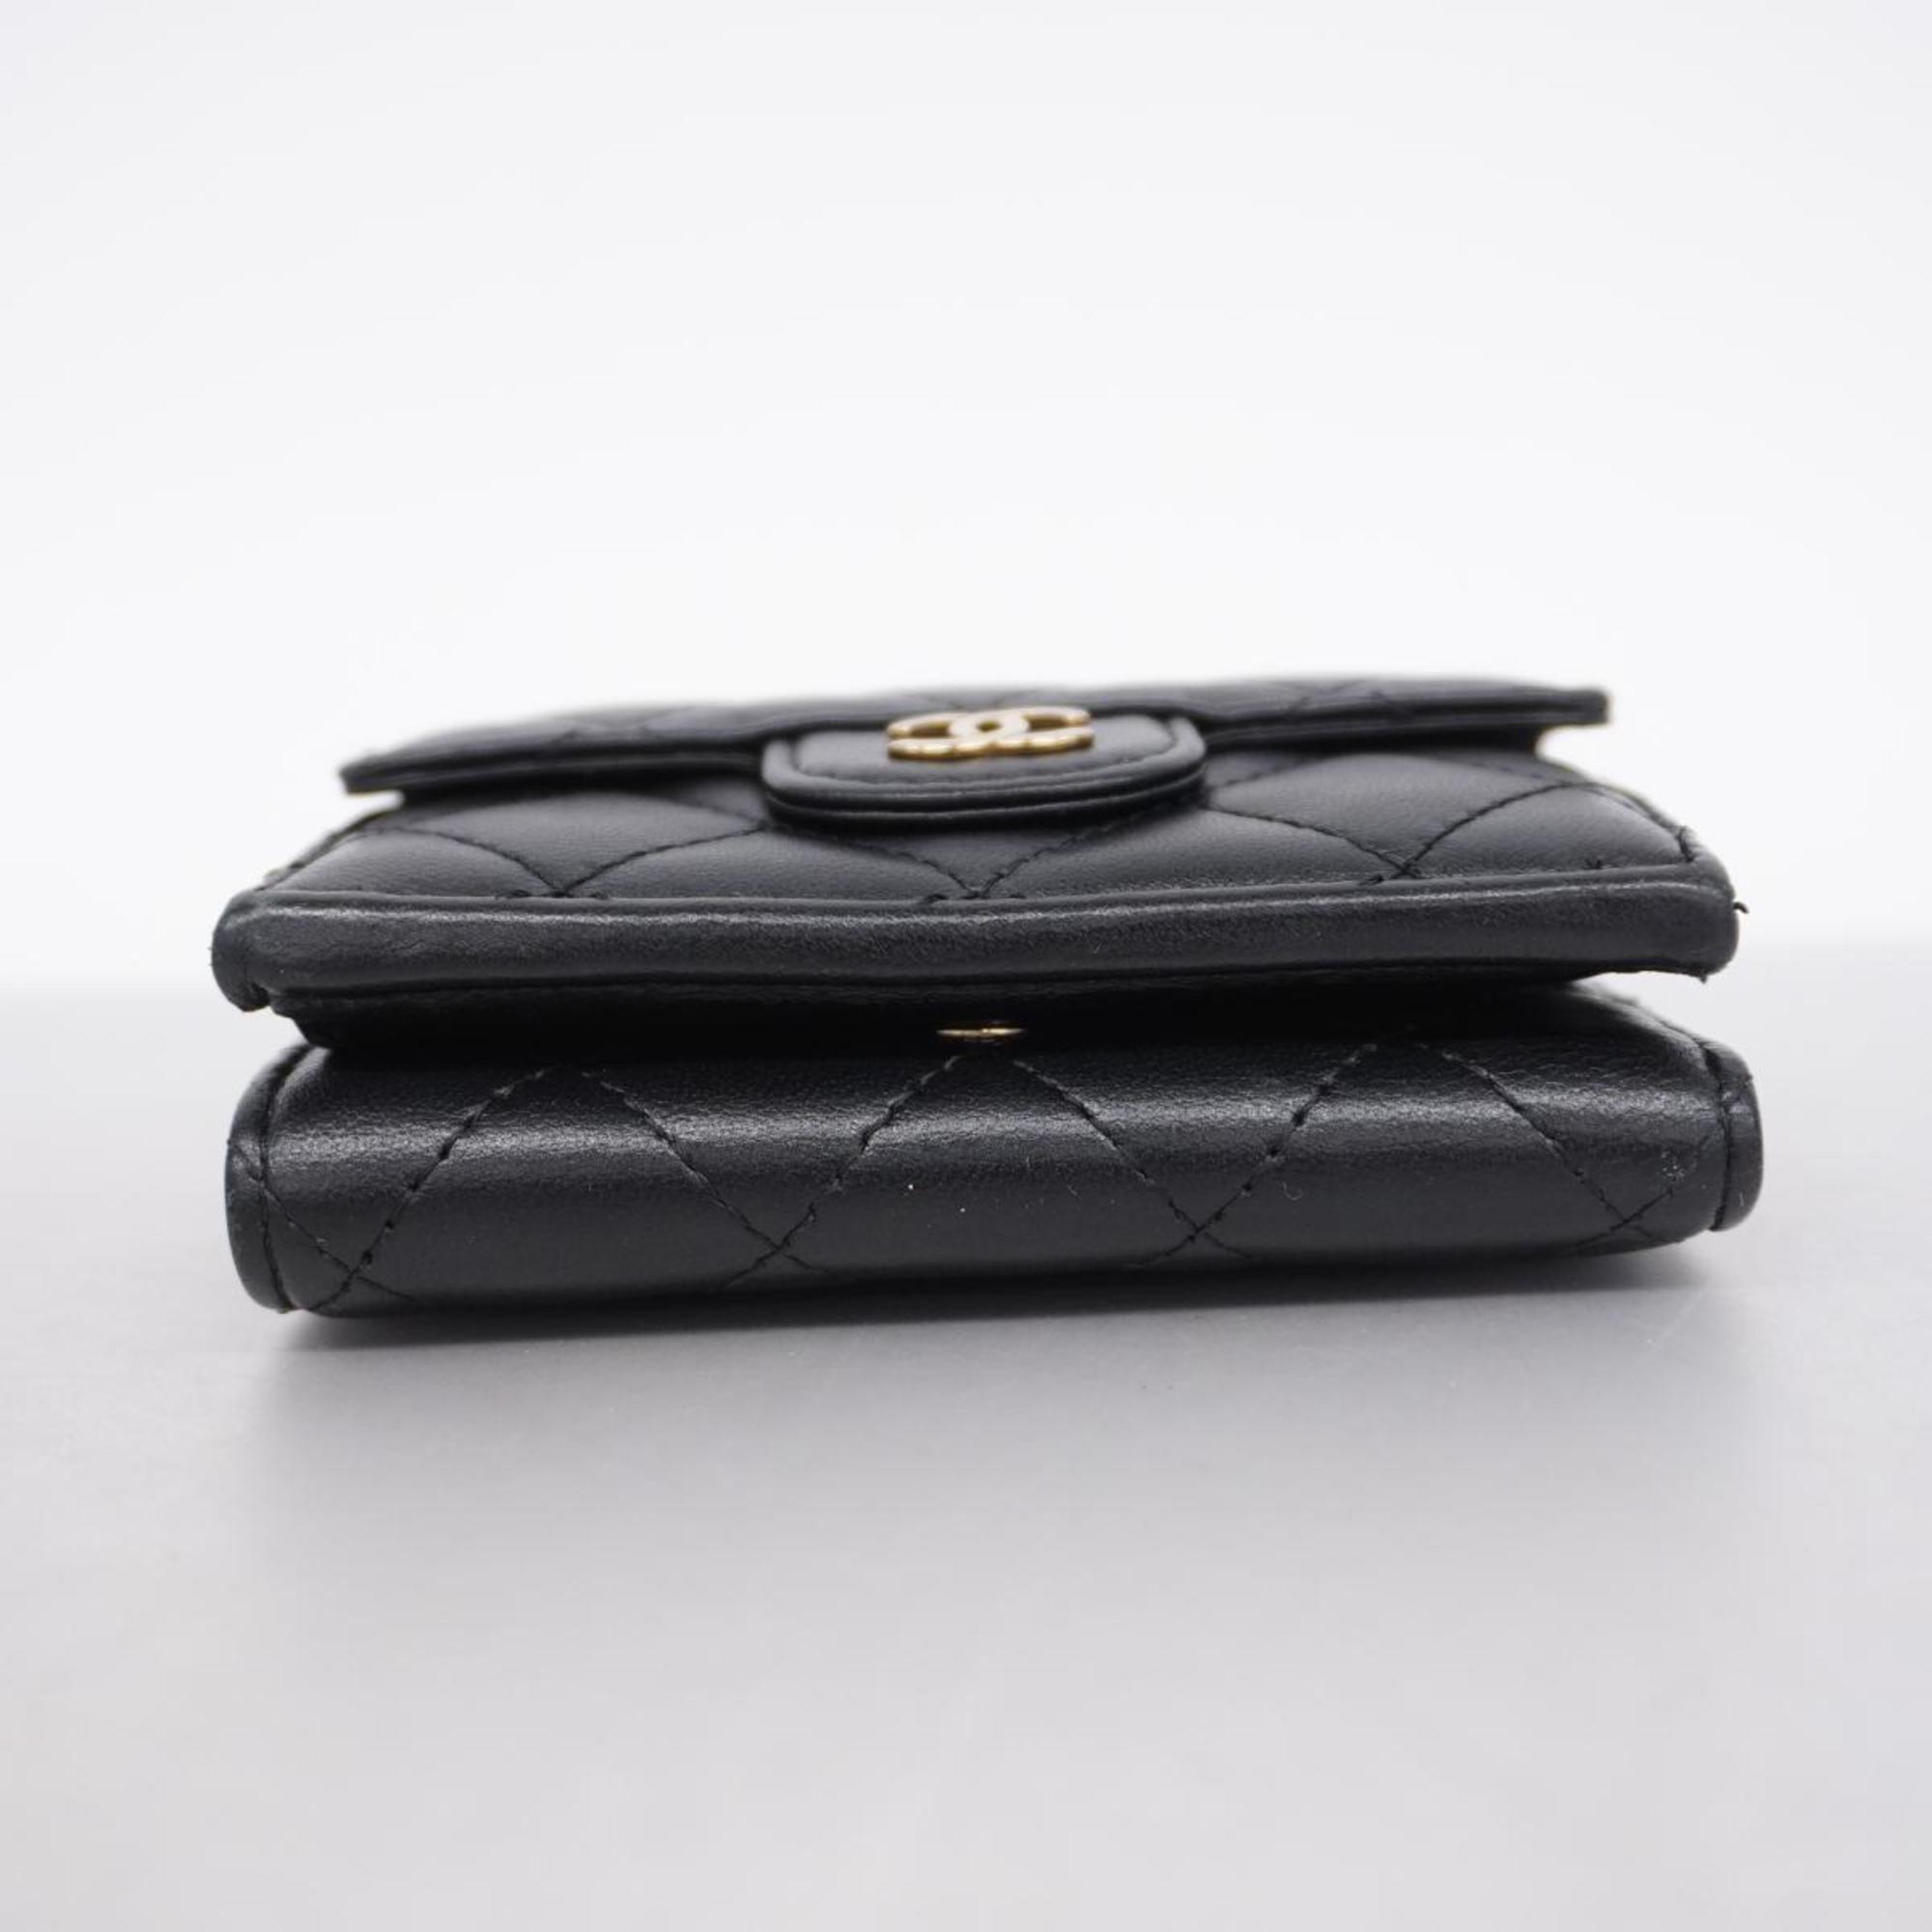 シャネル(Chanel) シャネル 三つ折り財布 マトラッセ ラムスキン 